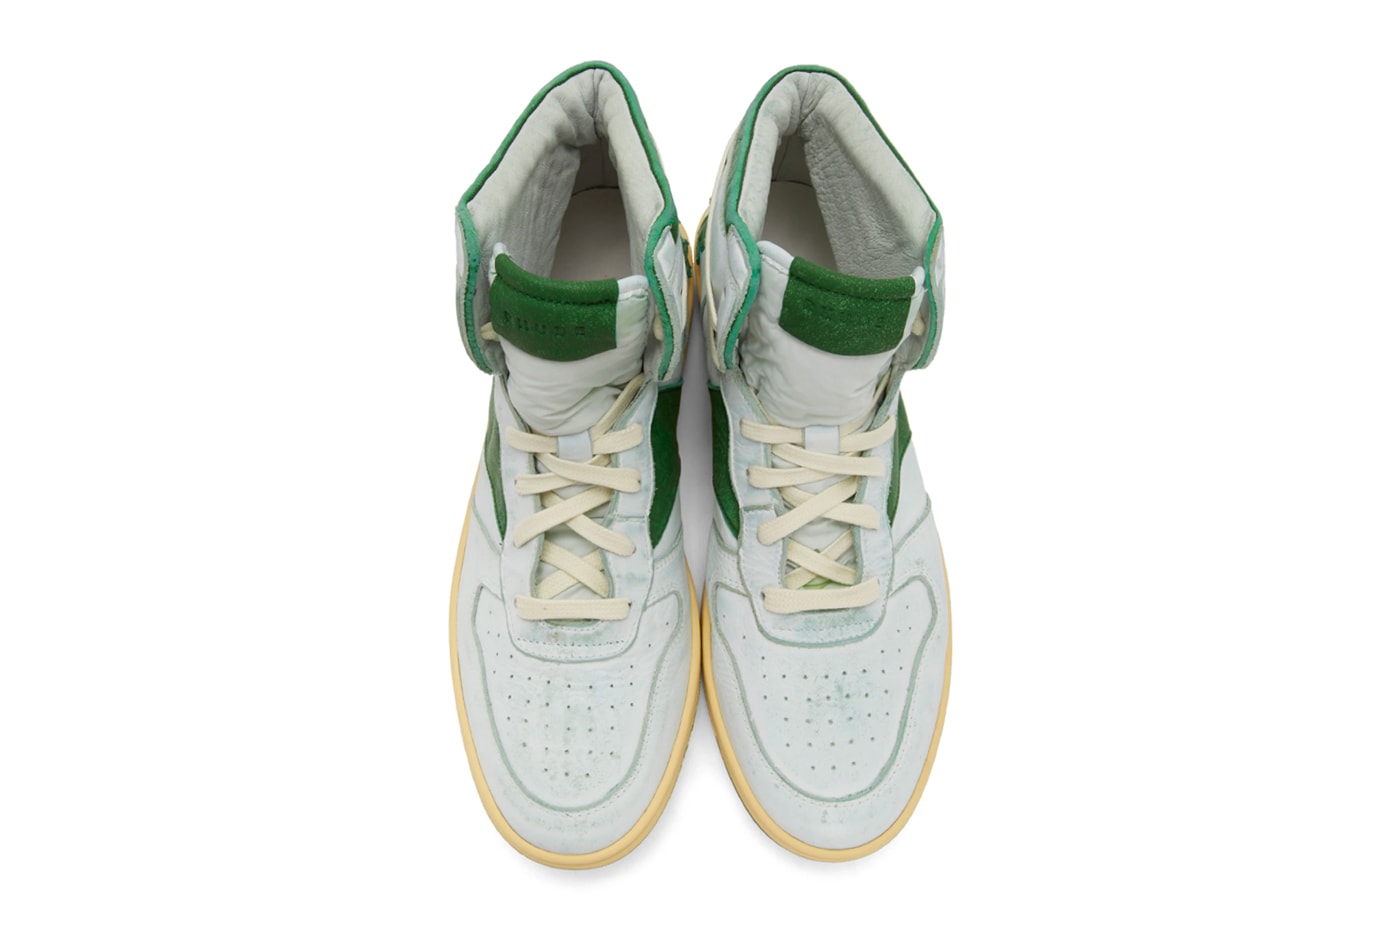 RHUDE Retro Bball Hi Sneakers White Green Grey Release Info Buy Price rhuigi villasenor